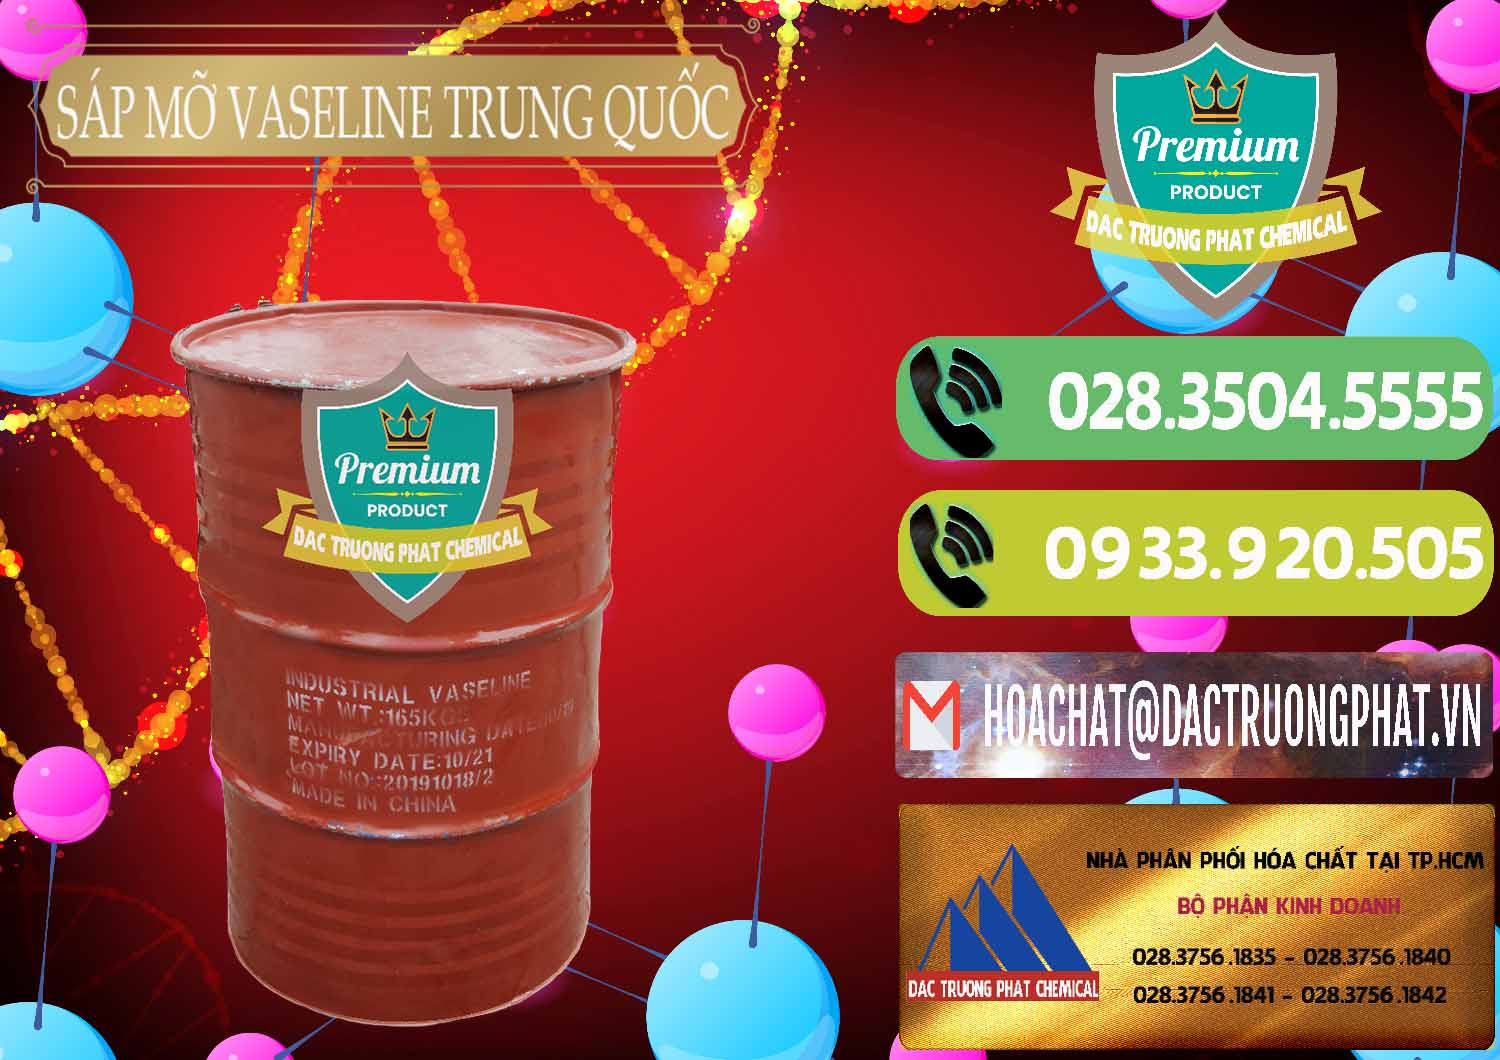 Cty chuyên kinh doanh & bán Sáp Mỡ Vaseline Trung Quốc China - 0122 - Công ty cung cấp - phân phối hóa chất tại TP.HCM - hoachatmientay.vn